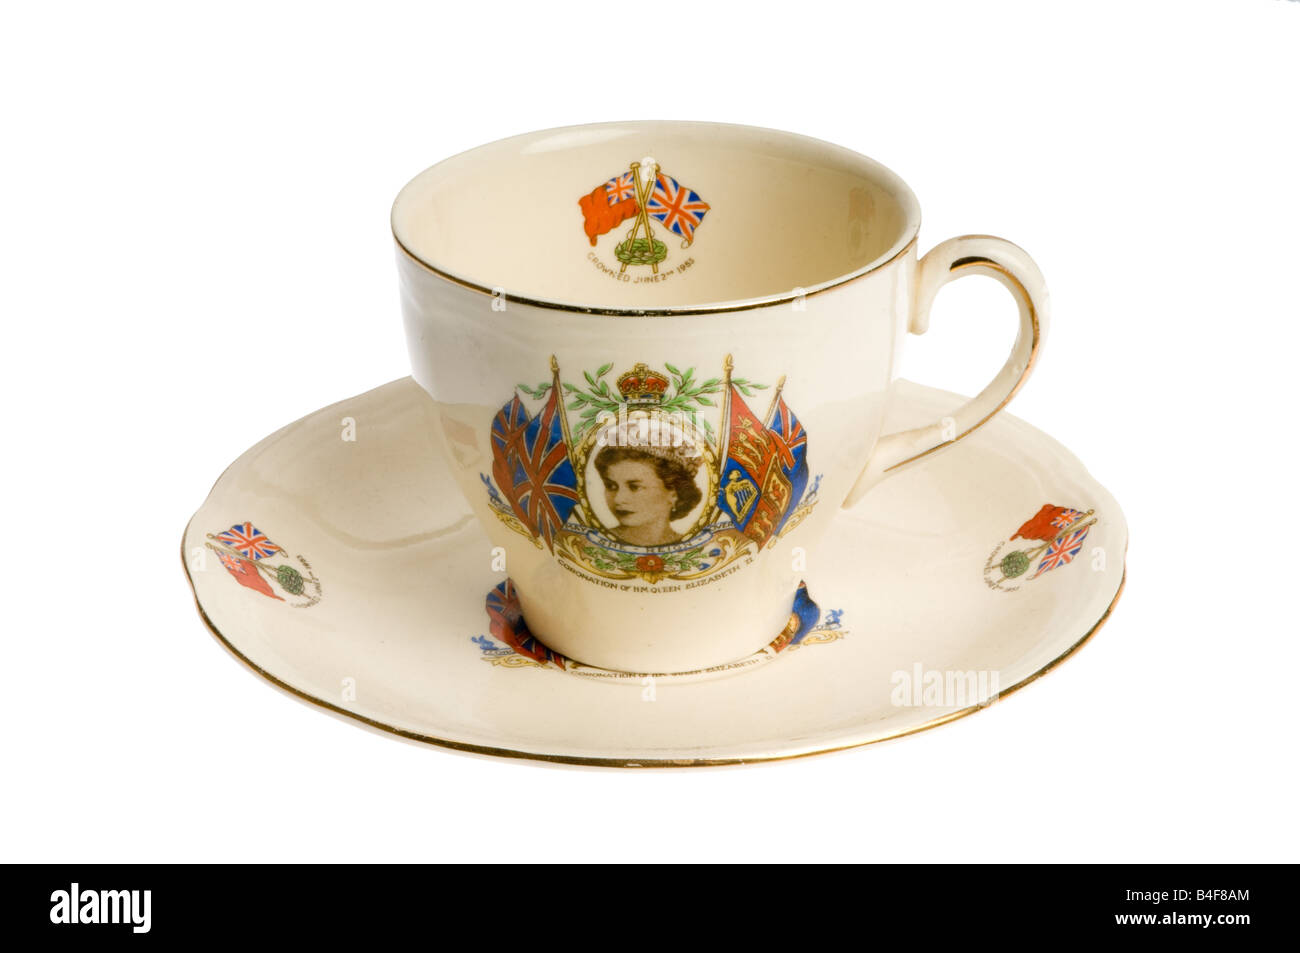 Taza de té con la cosecha Queen Elizabeth Foto de stock